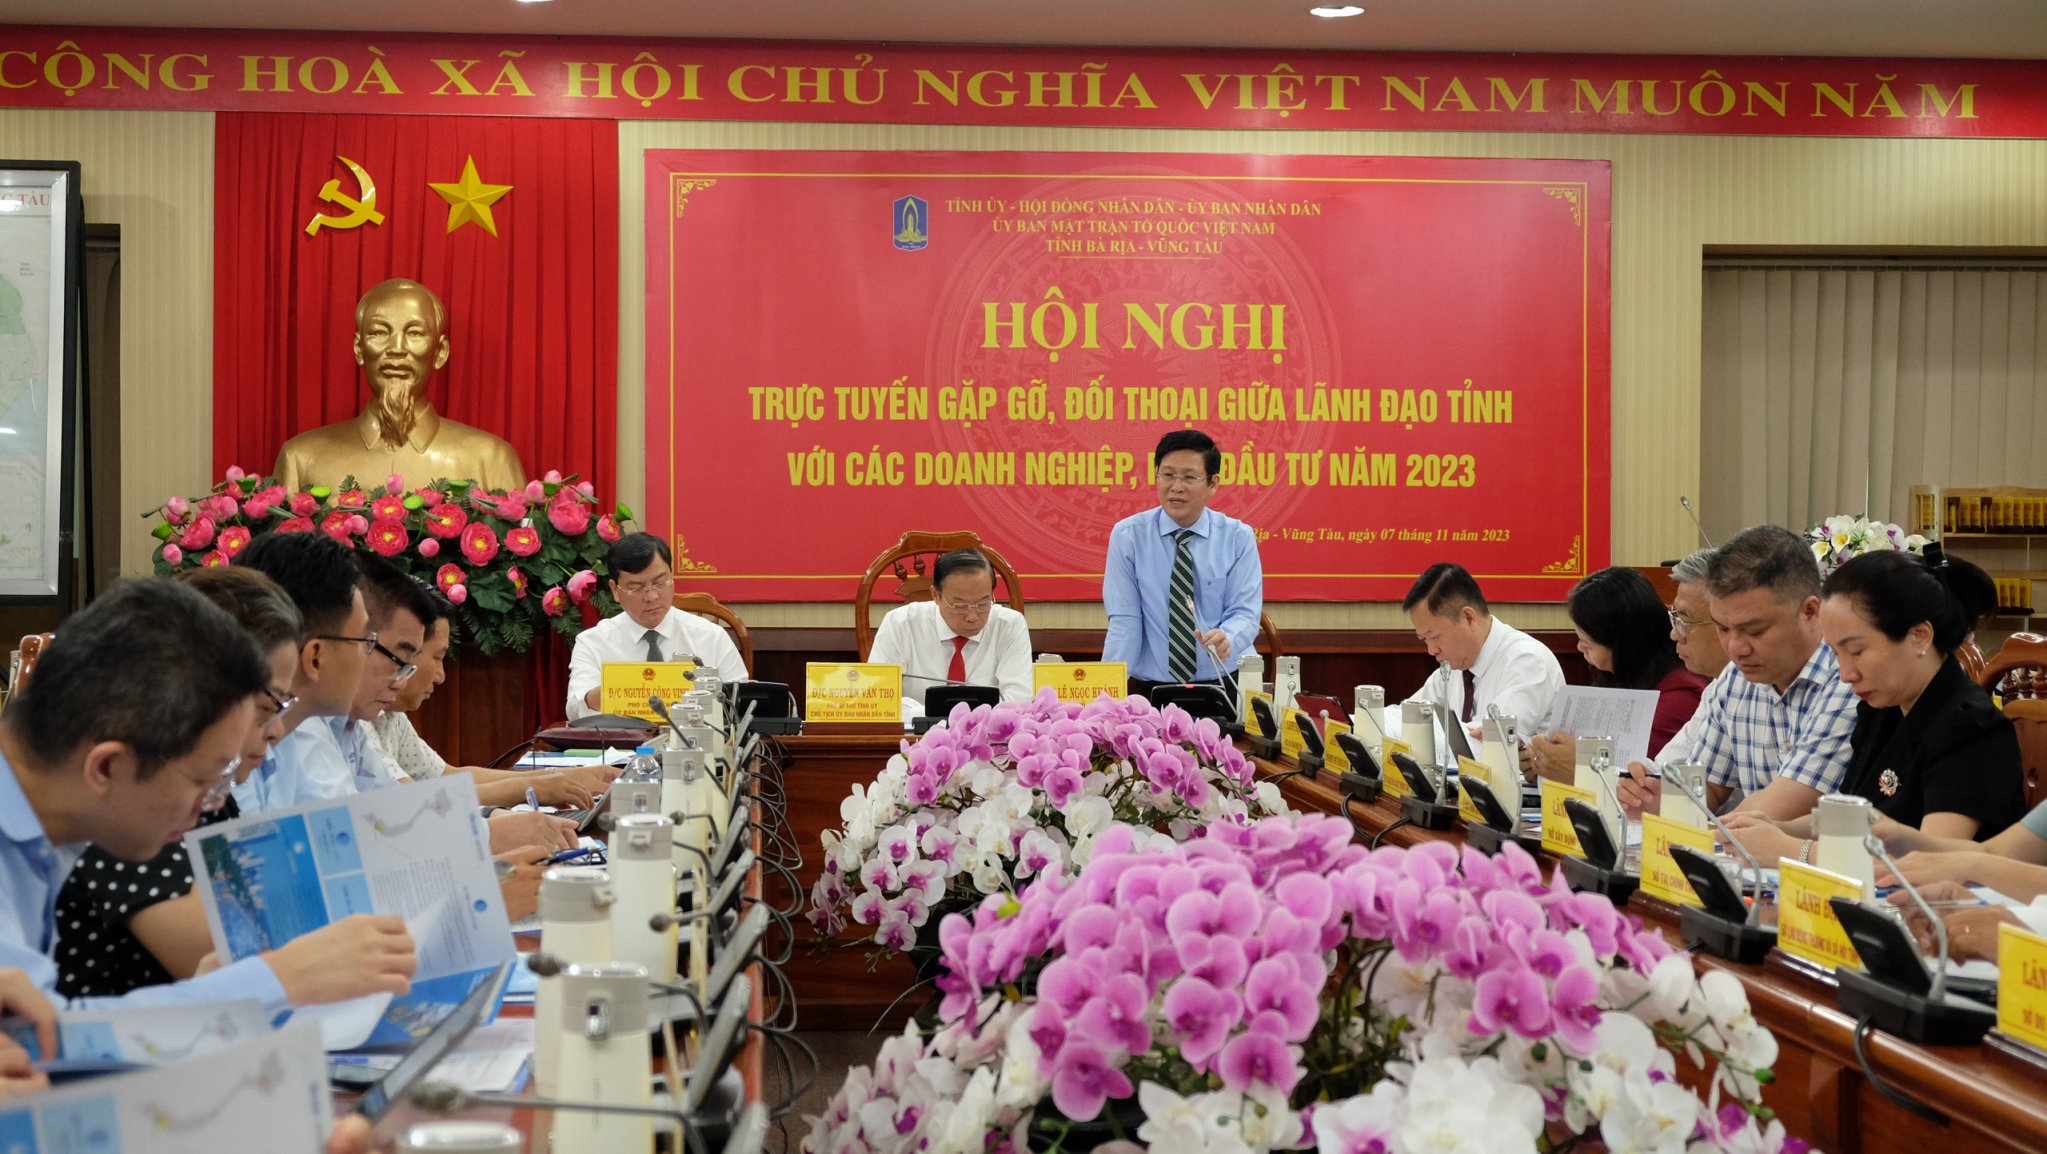 Ông Lê Ngọc Khánh, Phó Chủ tịch UBND tỉnh giải đáp các kiến nghị của DN